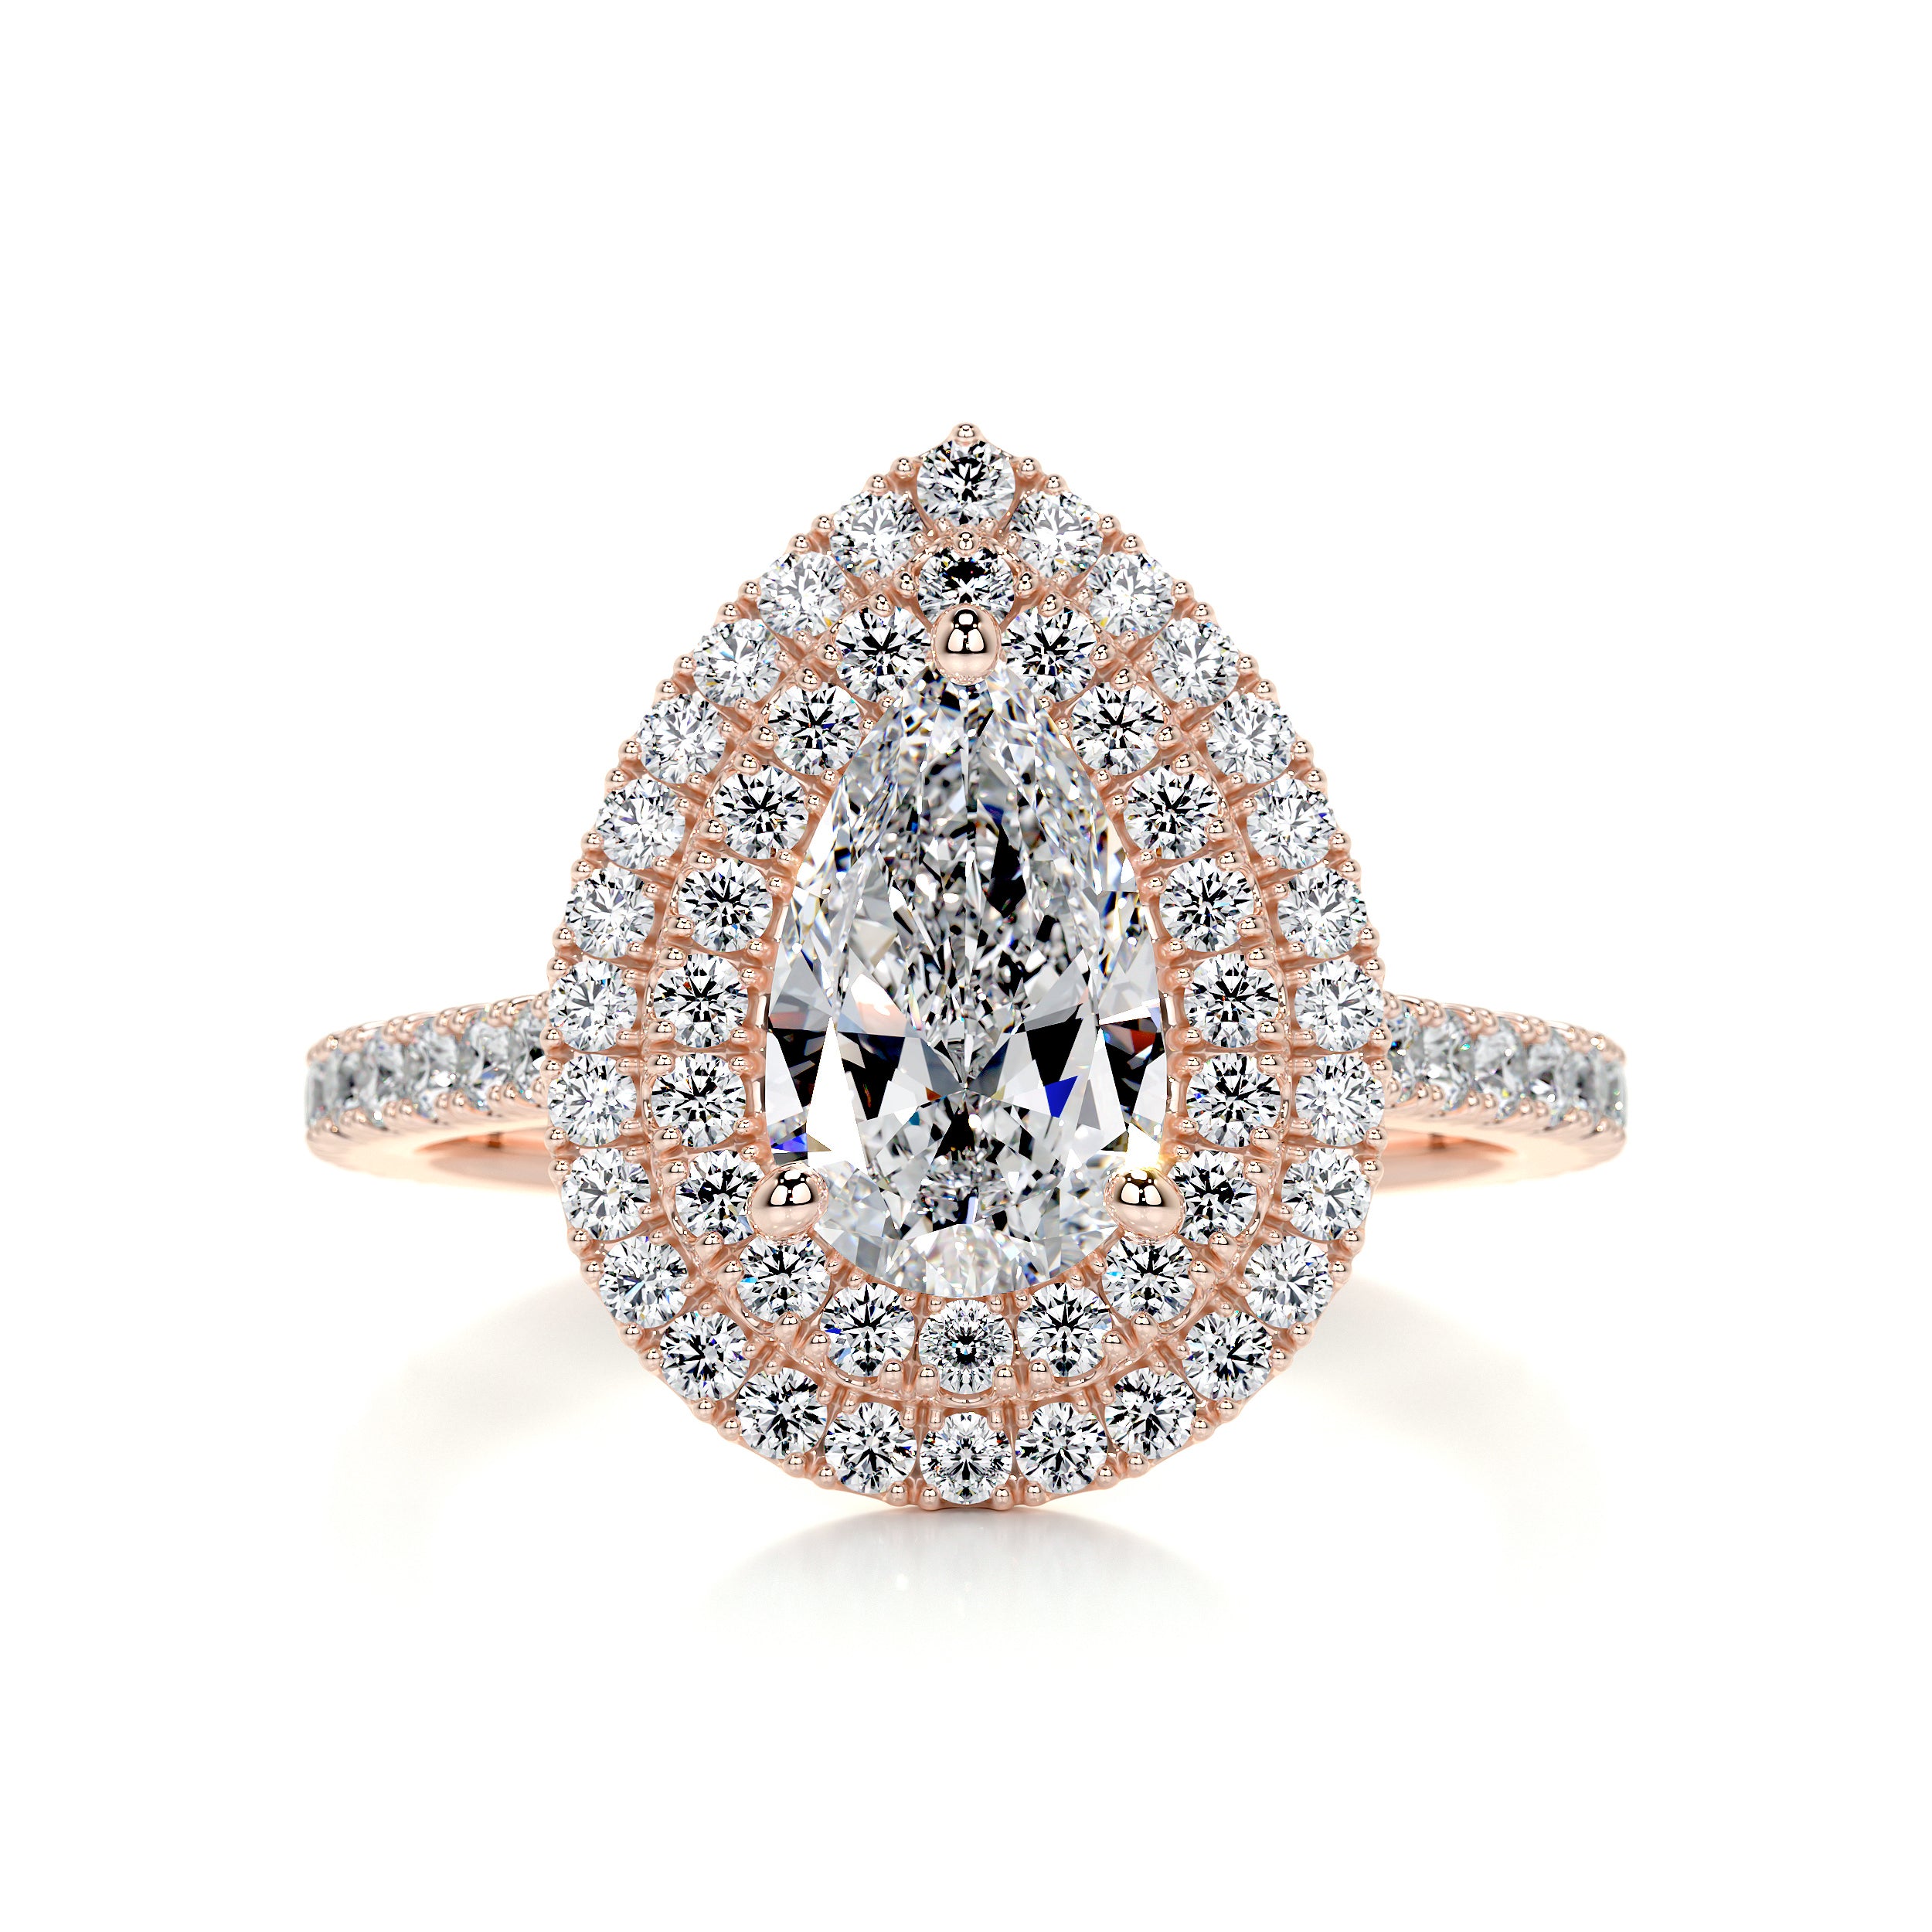 Gloria Diamond Engagement Ring   (1.65 Carat) -14K Rose Gold